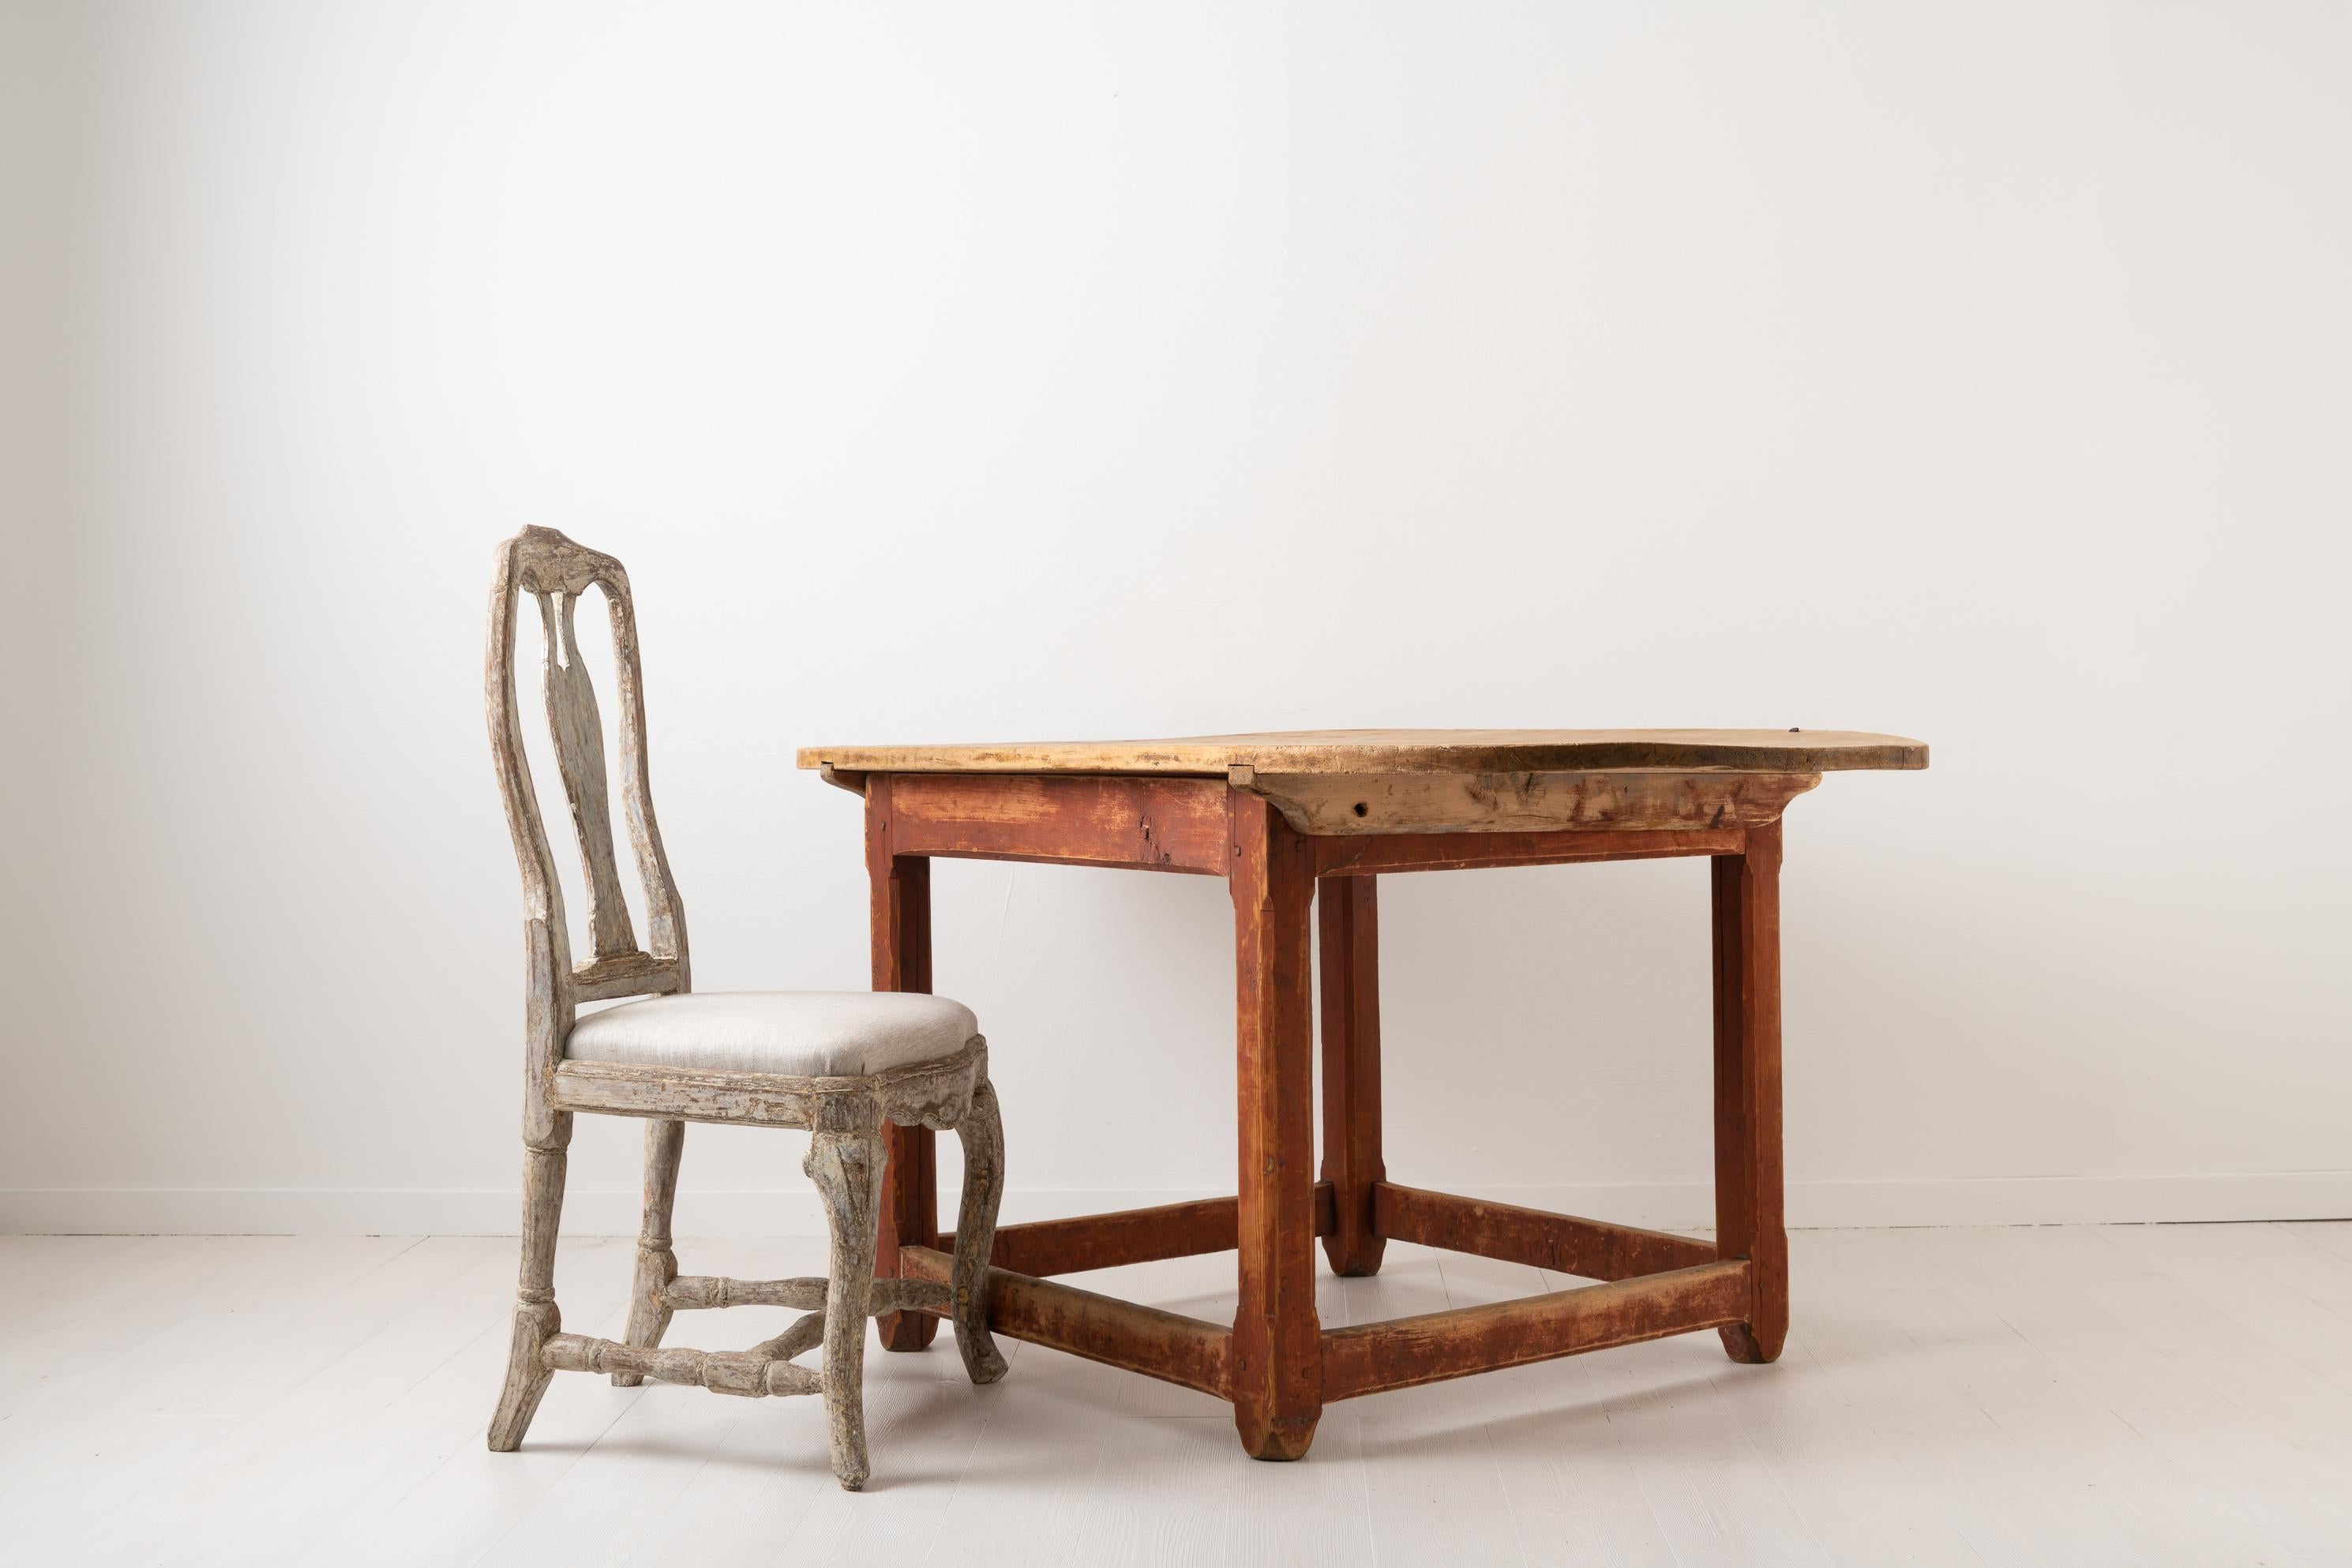 Table centrale baroque suédoise de la fin des années 1700. La table est une table de travail et sa construction est rustique et primitive. Le plateau de table détaché est constitué de trois planches de bois de plus d'un pouce / 3 cm d'épaisseur et